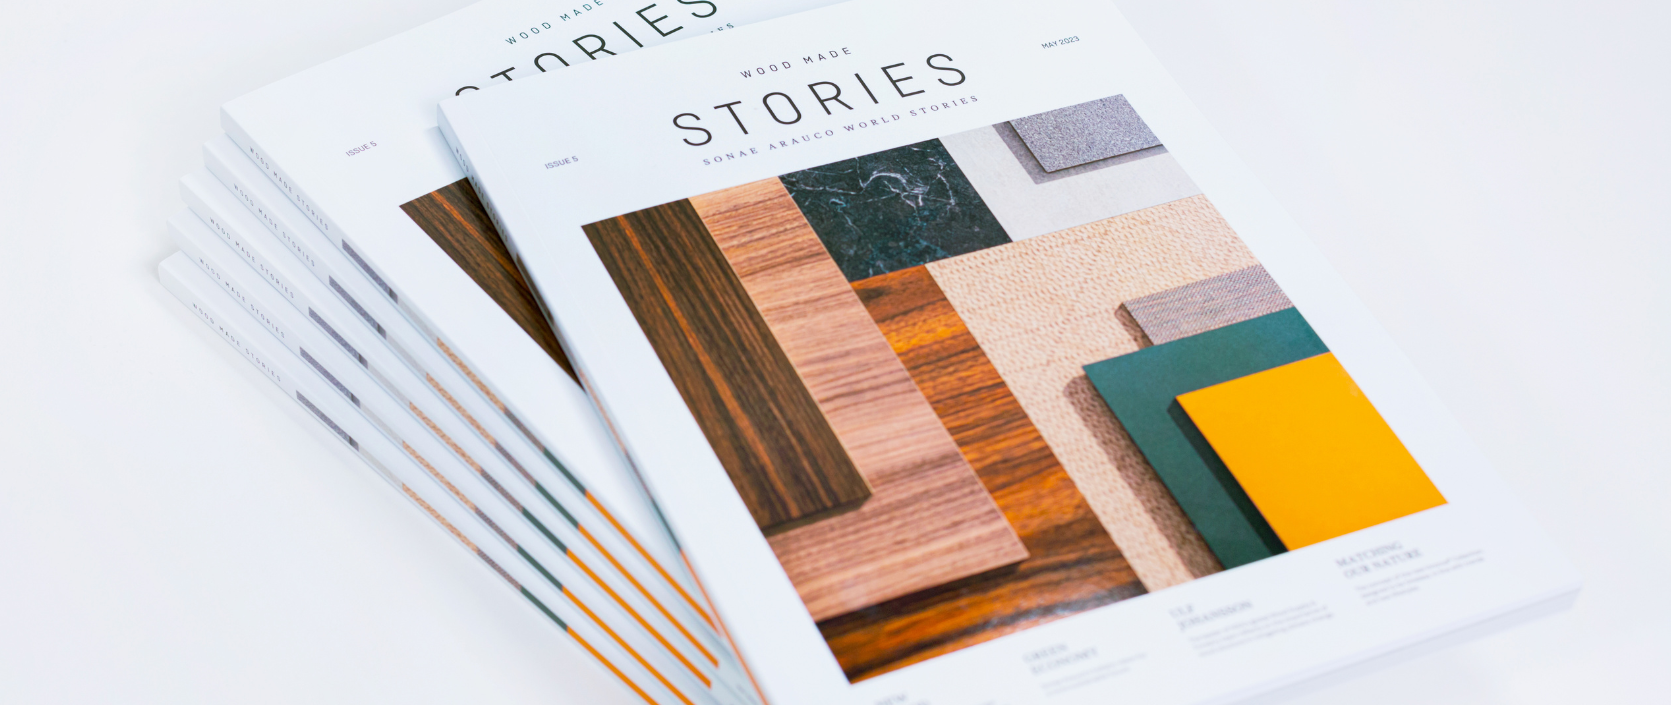 Sonae Arauco wydała już piątą edycję Wood Made Stories magazine